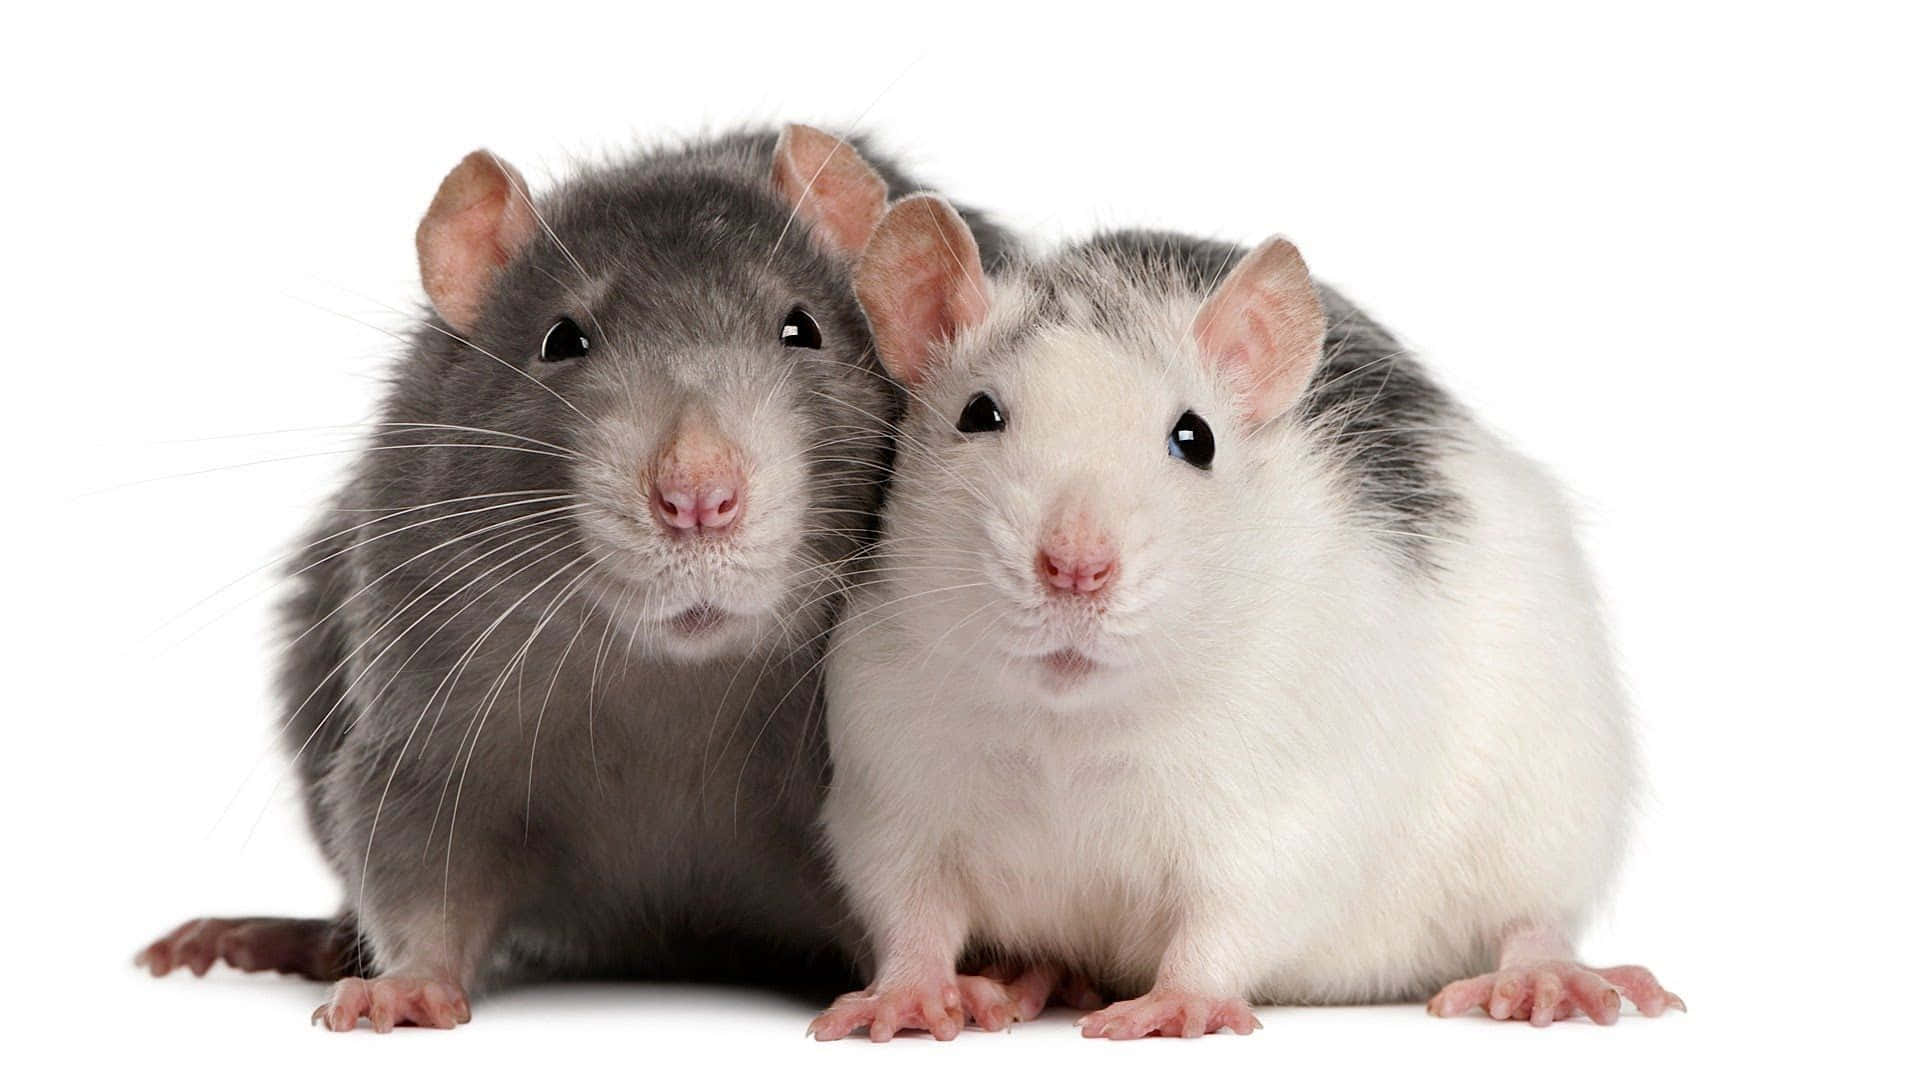 Zweisüße Ratten, Grau Und Weiß, Abbildung.